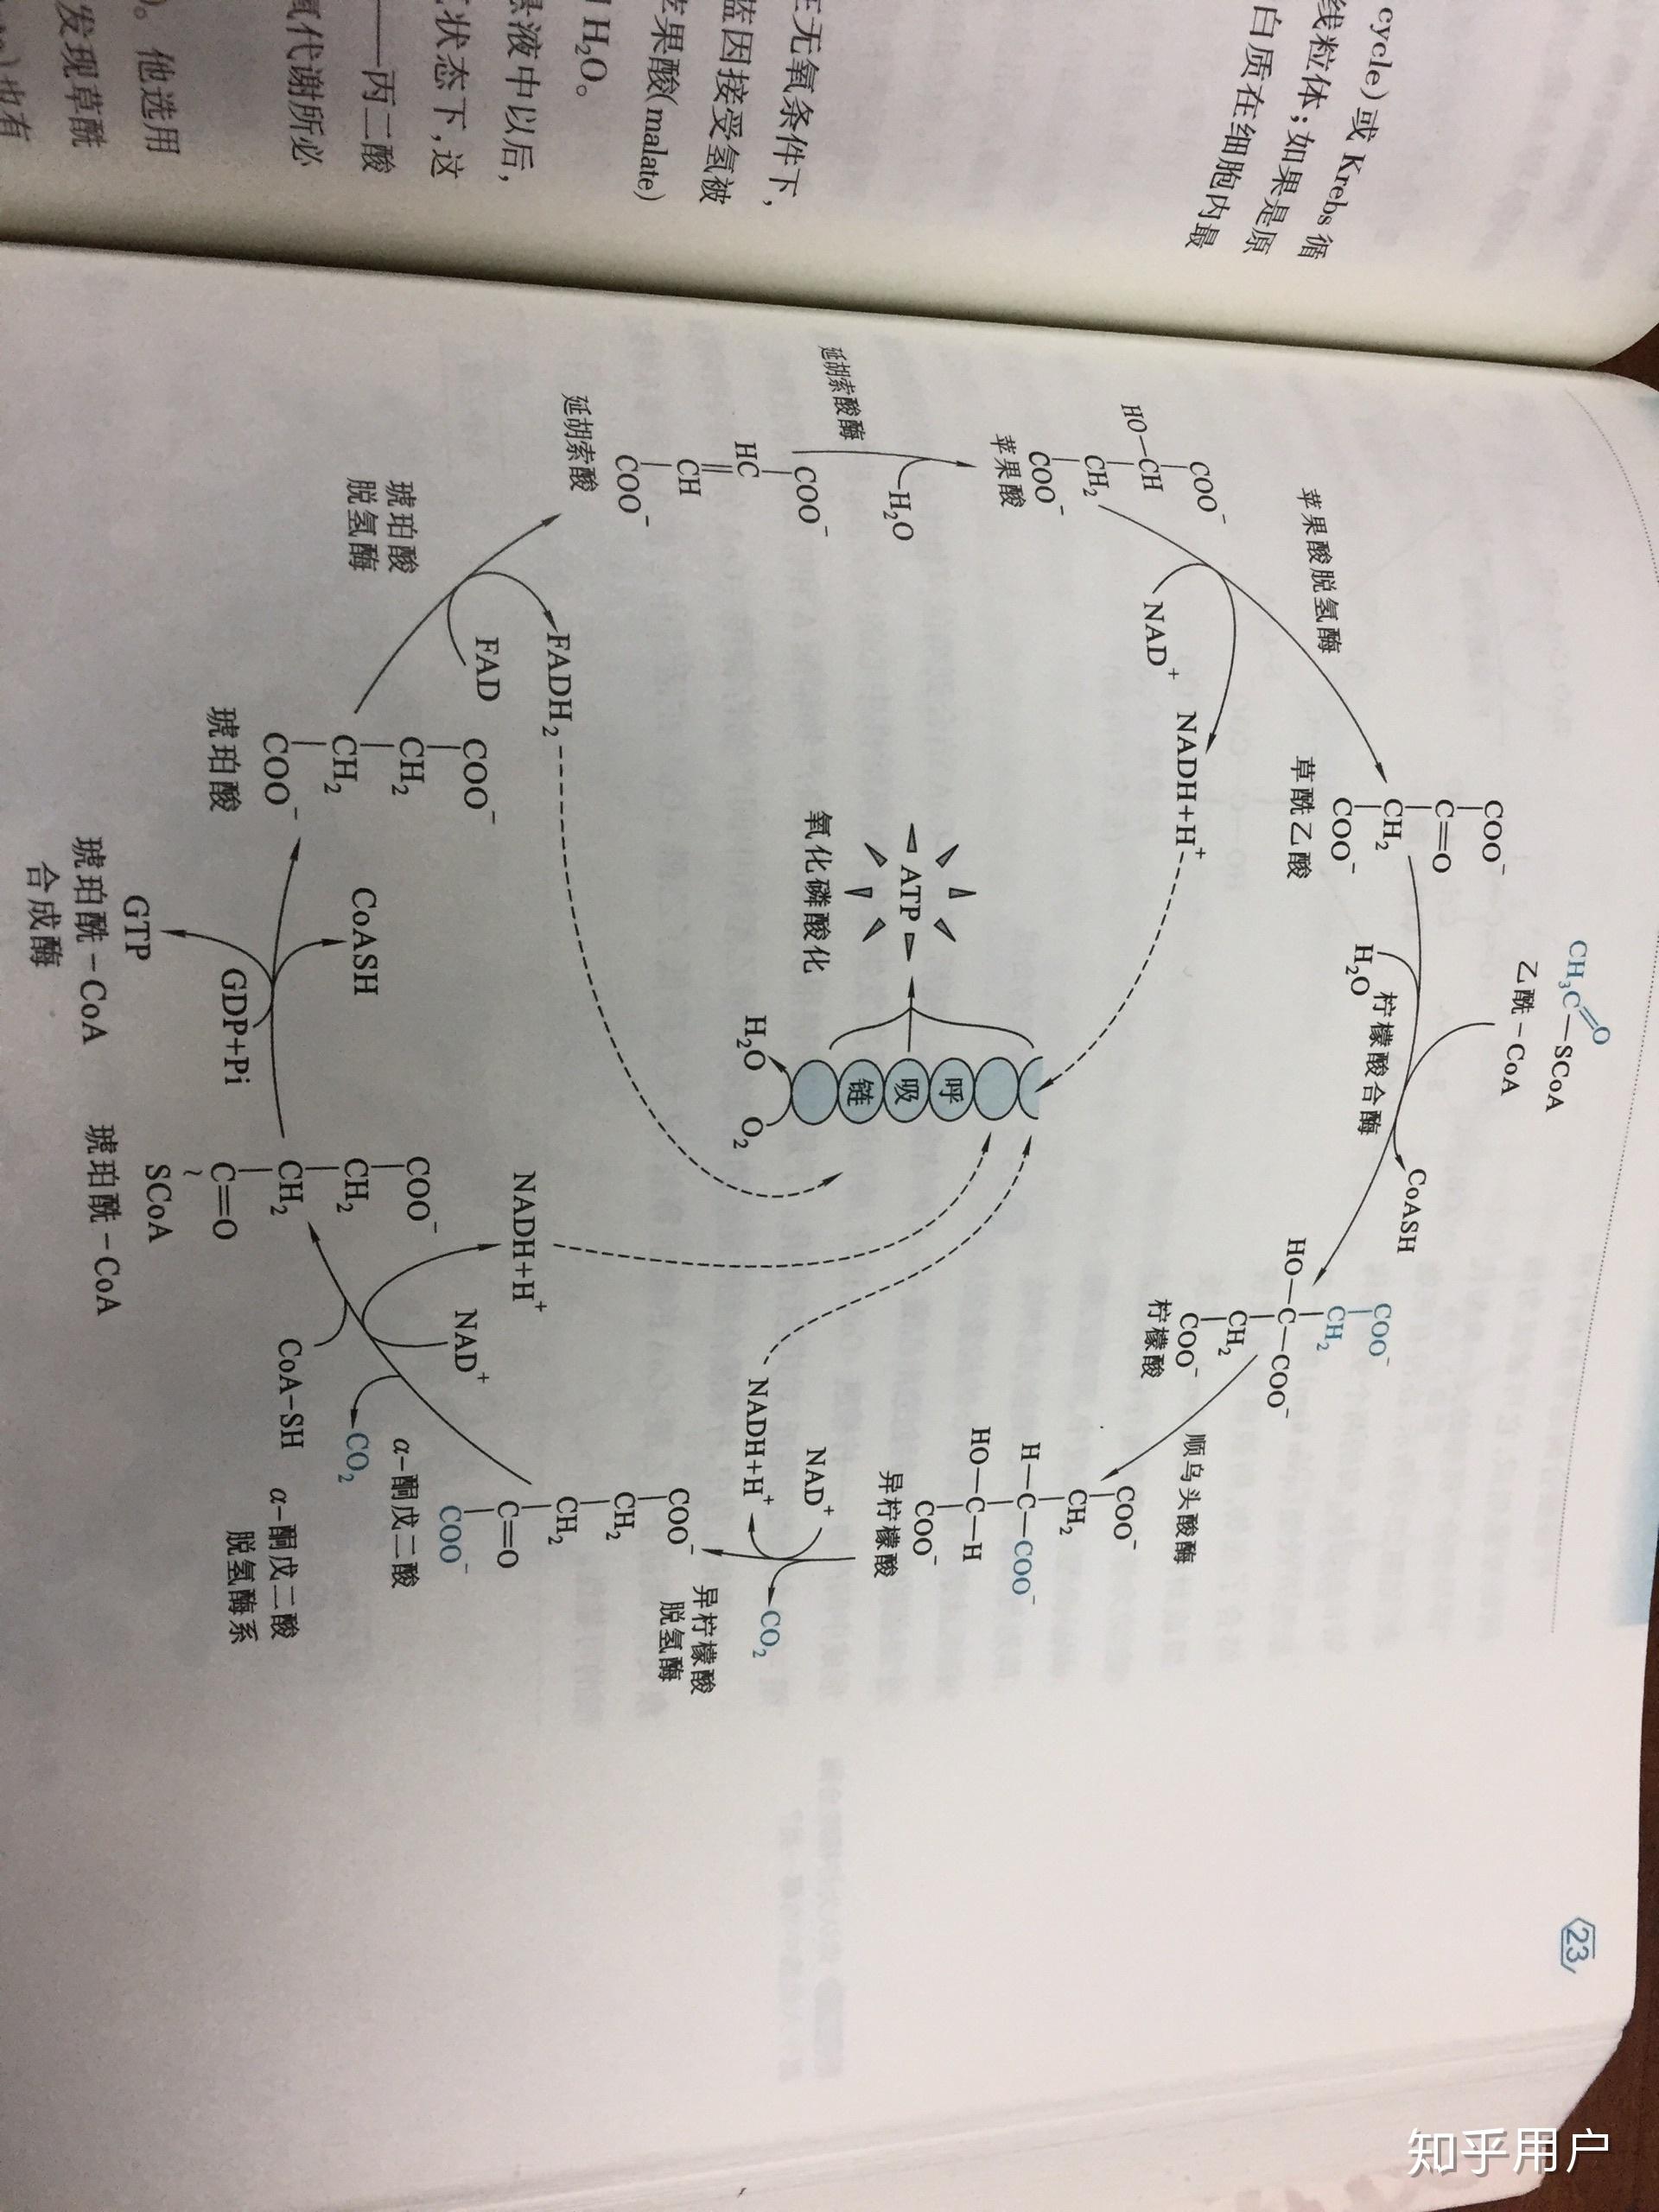 三羧酸循环方程式图片